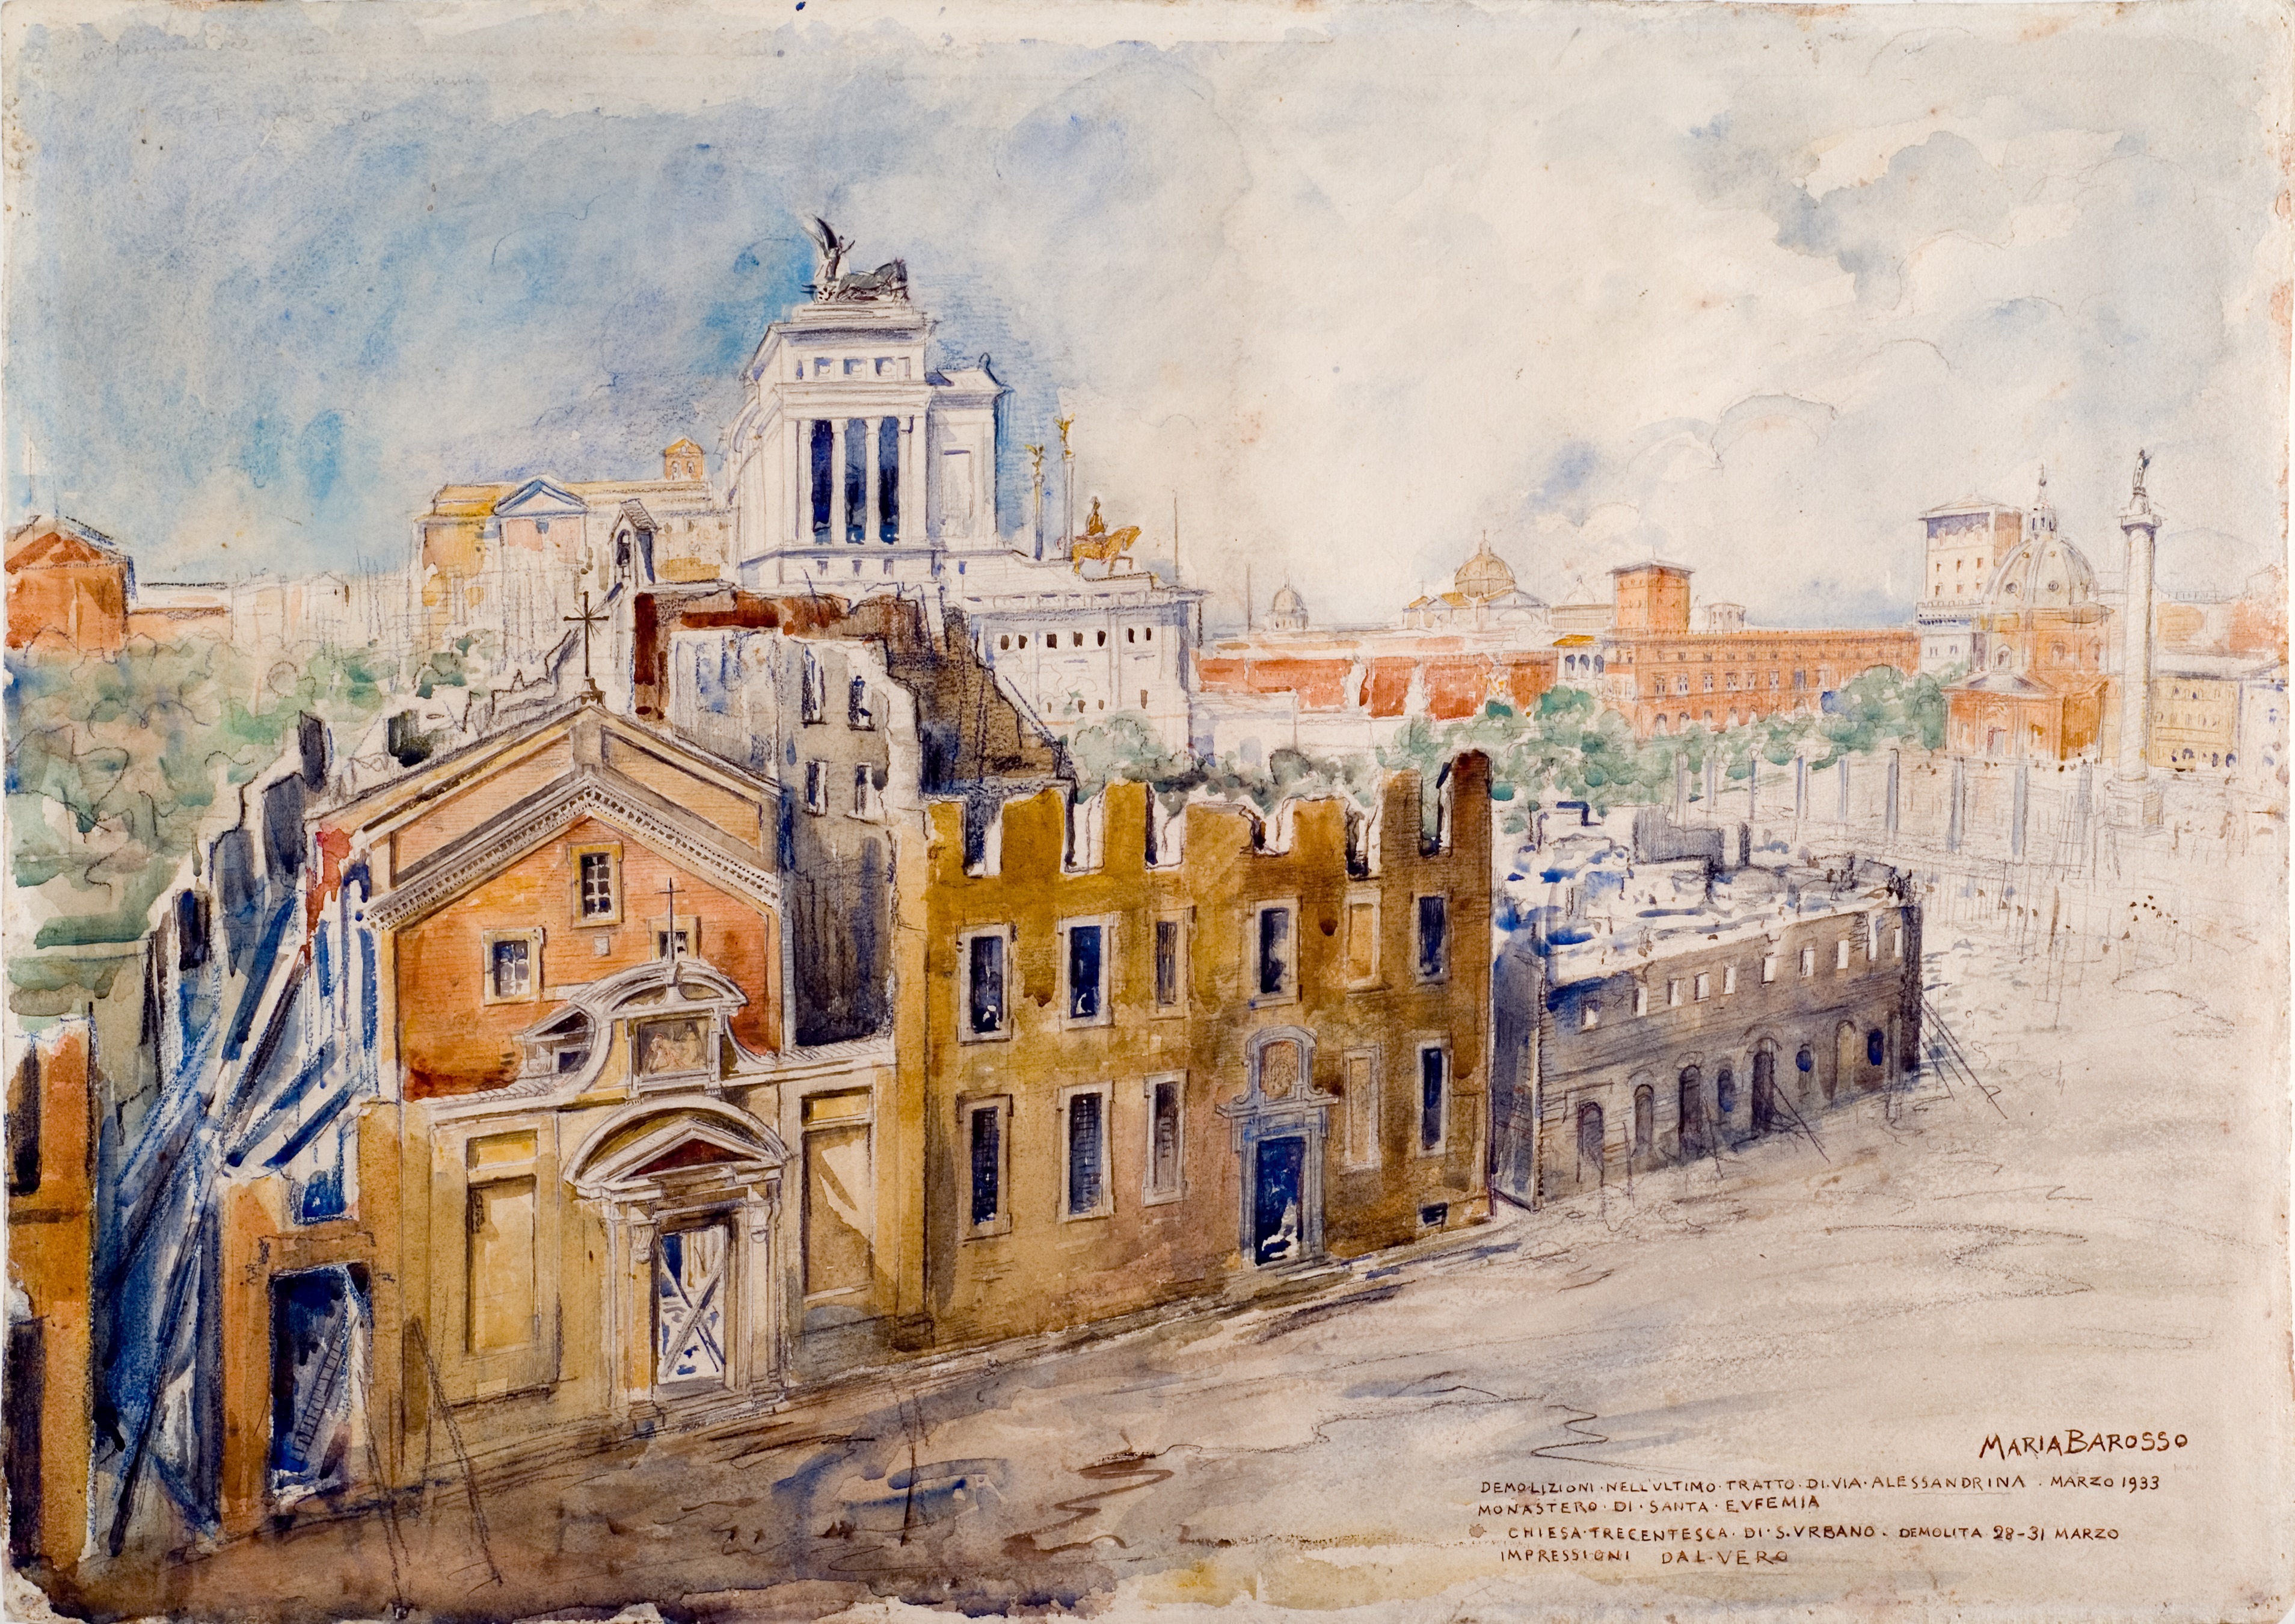 Maria Barosso, Demolizioni del Monastero e della Chiesa di Sant'Urbano - 1933 (Museo di Roma)